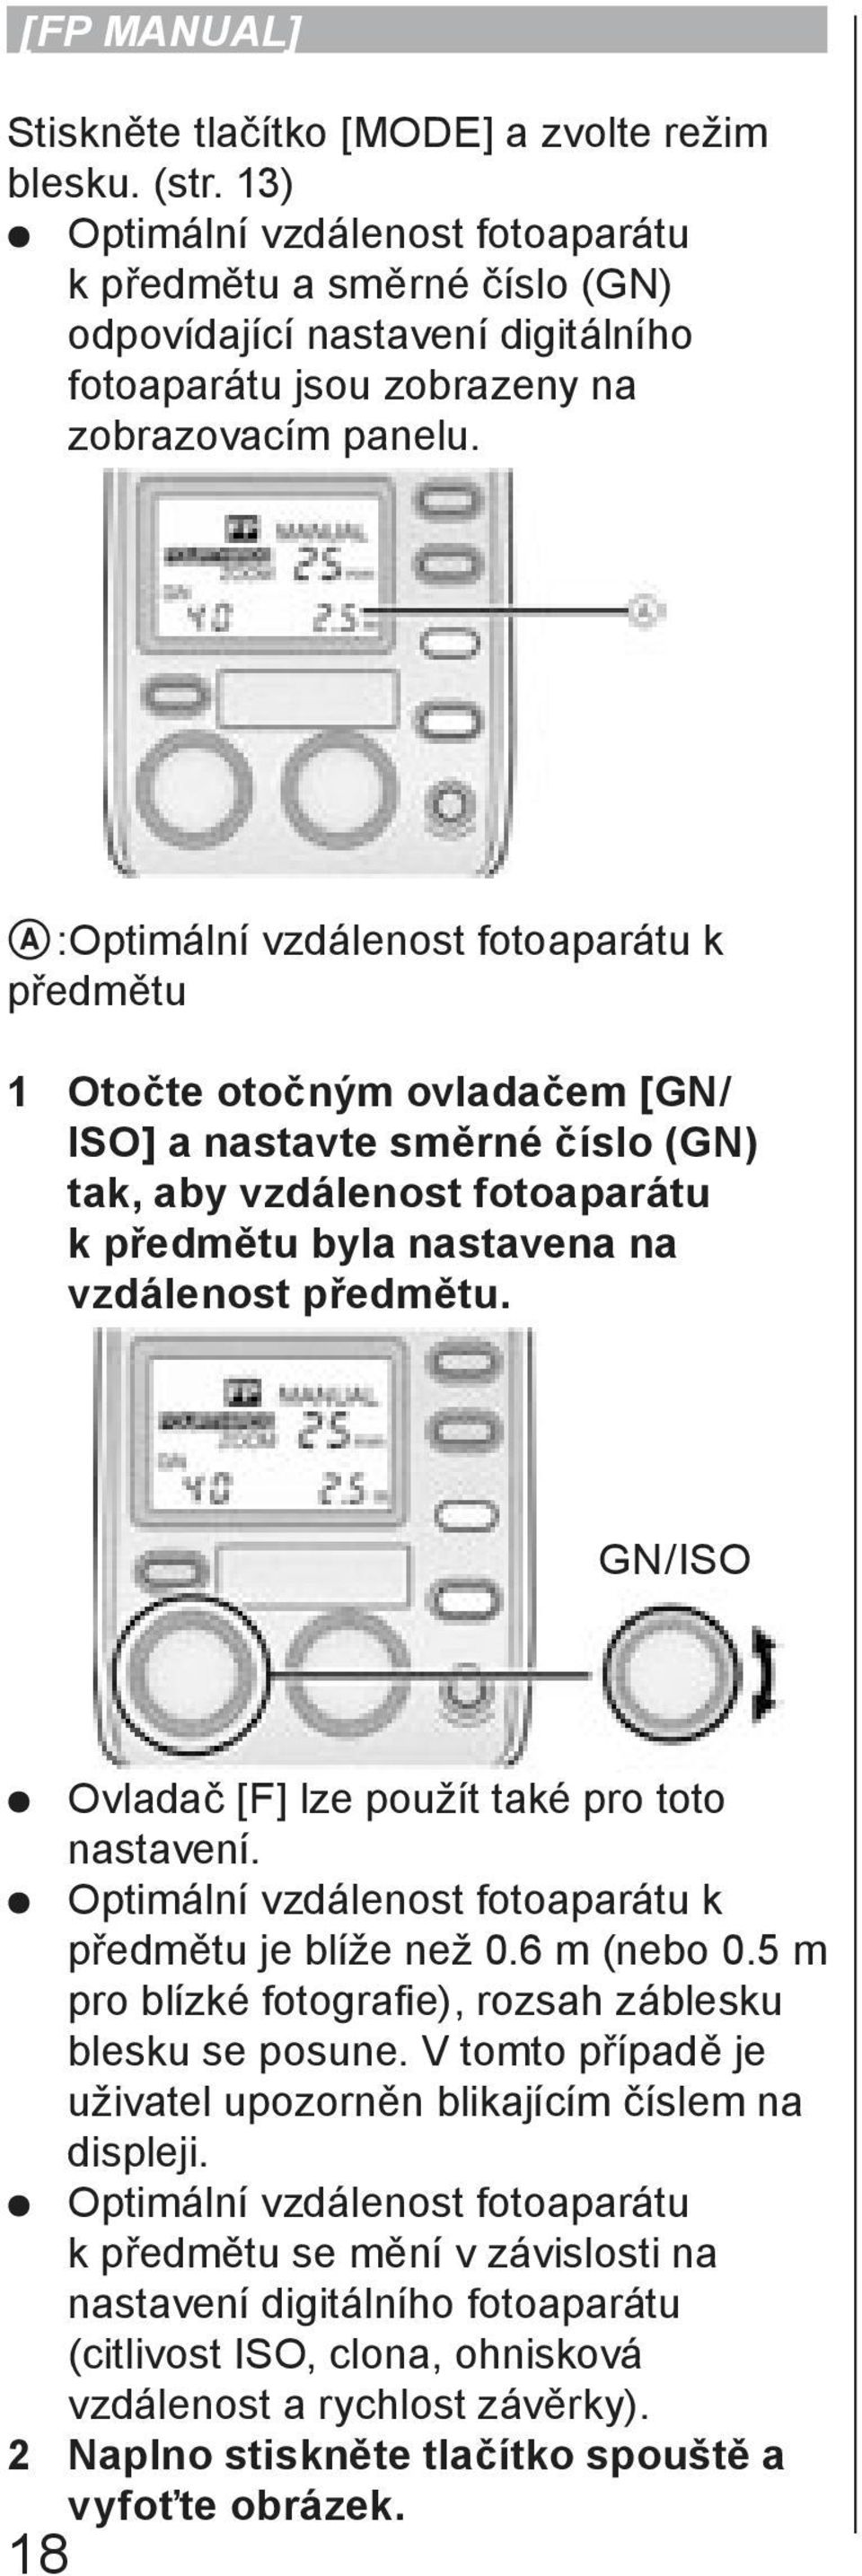 A:Optimální vzdálenost fotoaparátu k předmětu 1 Otočte otočným ovladačem [GN/ ISO] a nastavte směrné číslo (GN) tak, aby vzdálenost fotoaparátu k předmětu byla nastavena na vzdálenost předmětu.